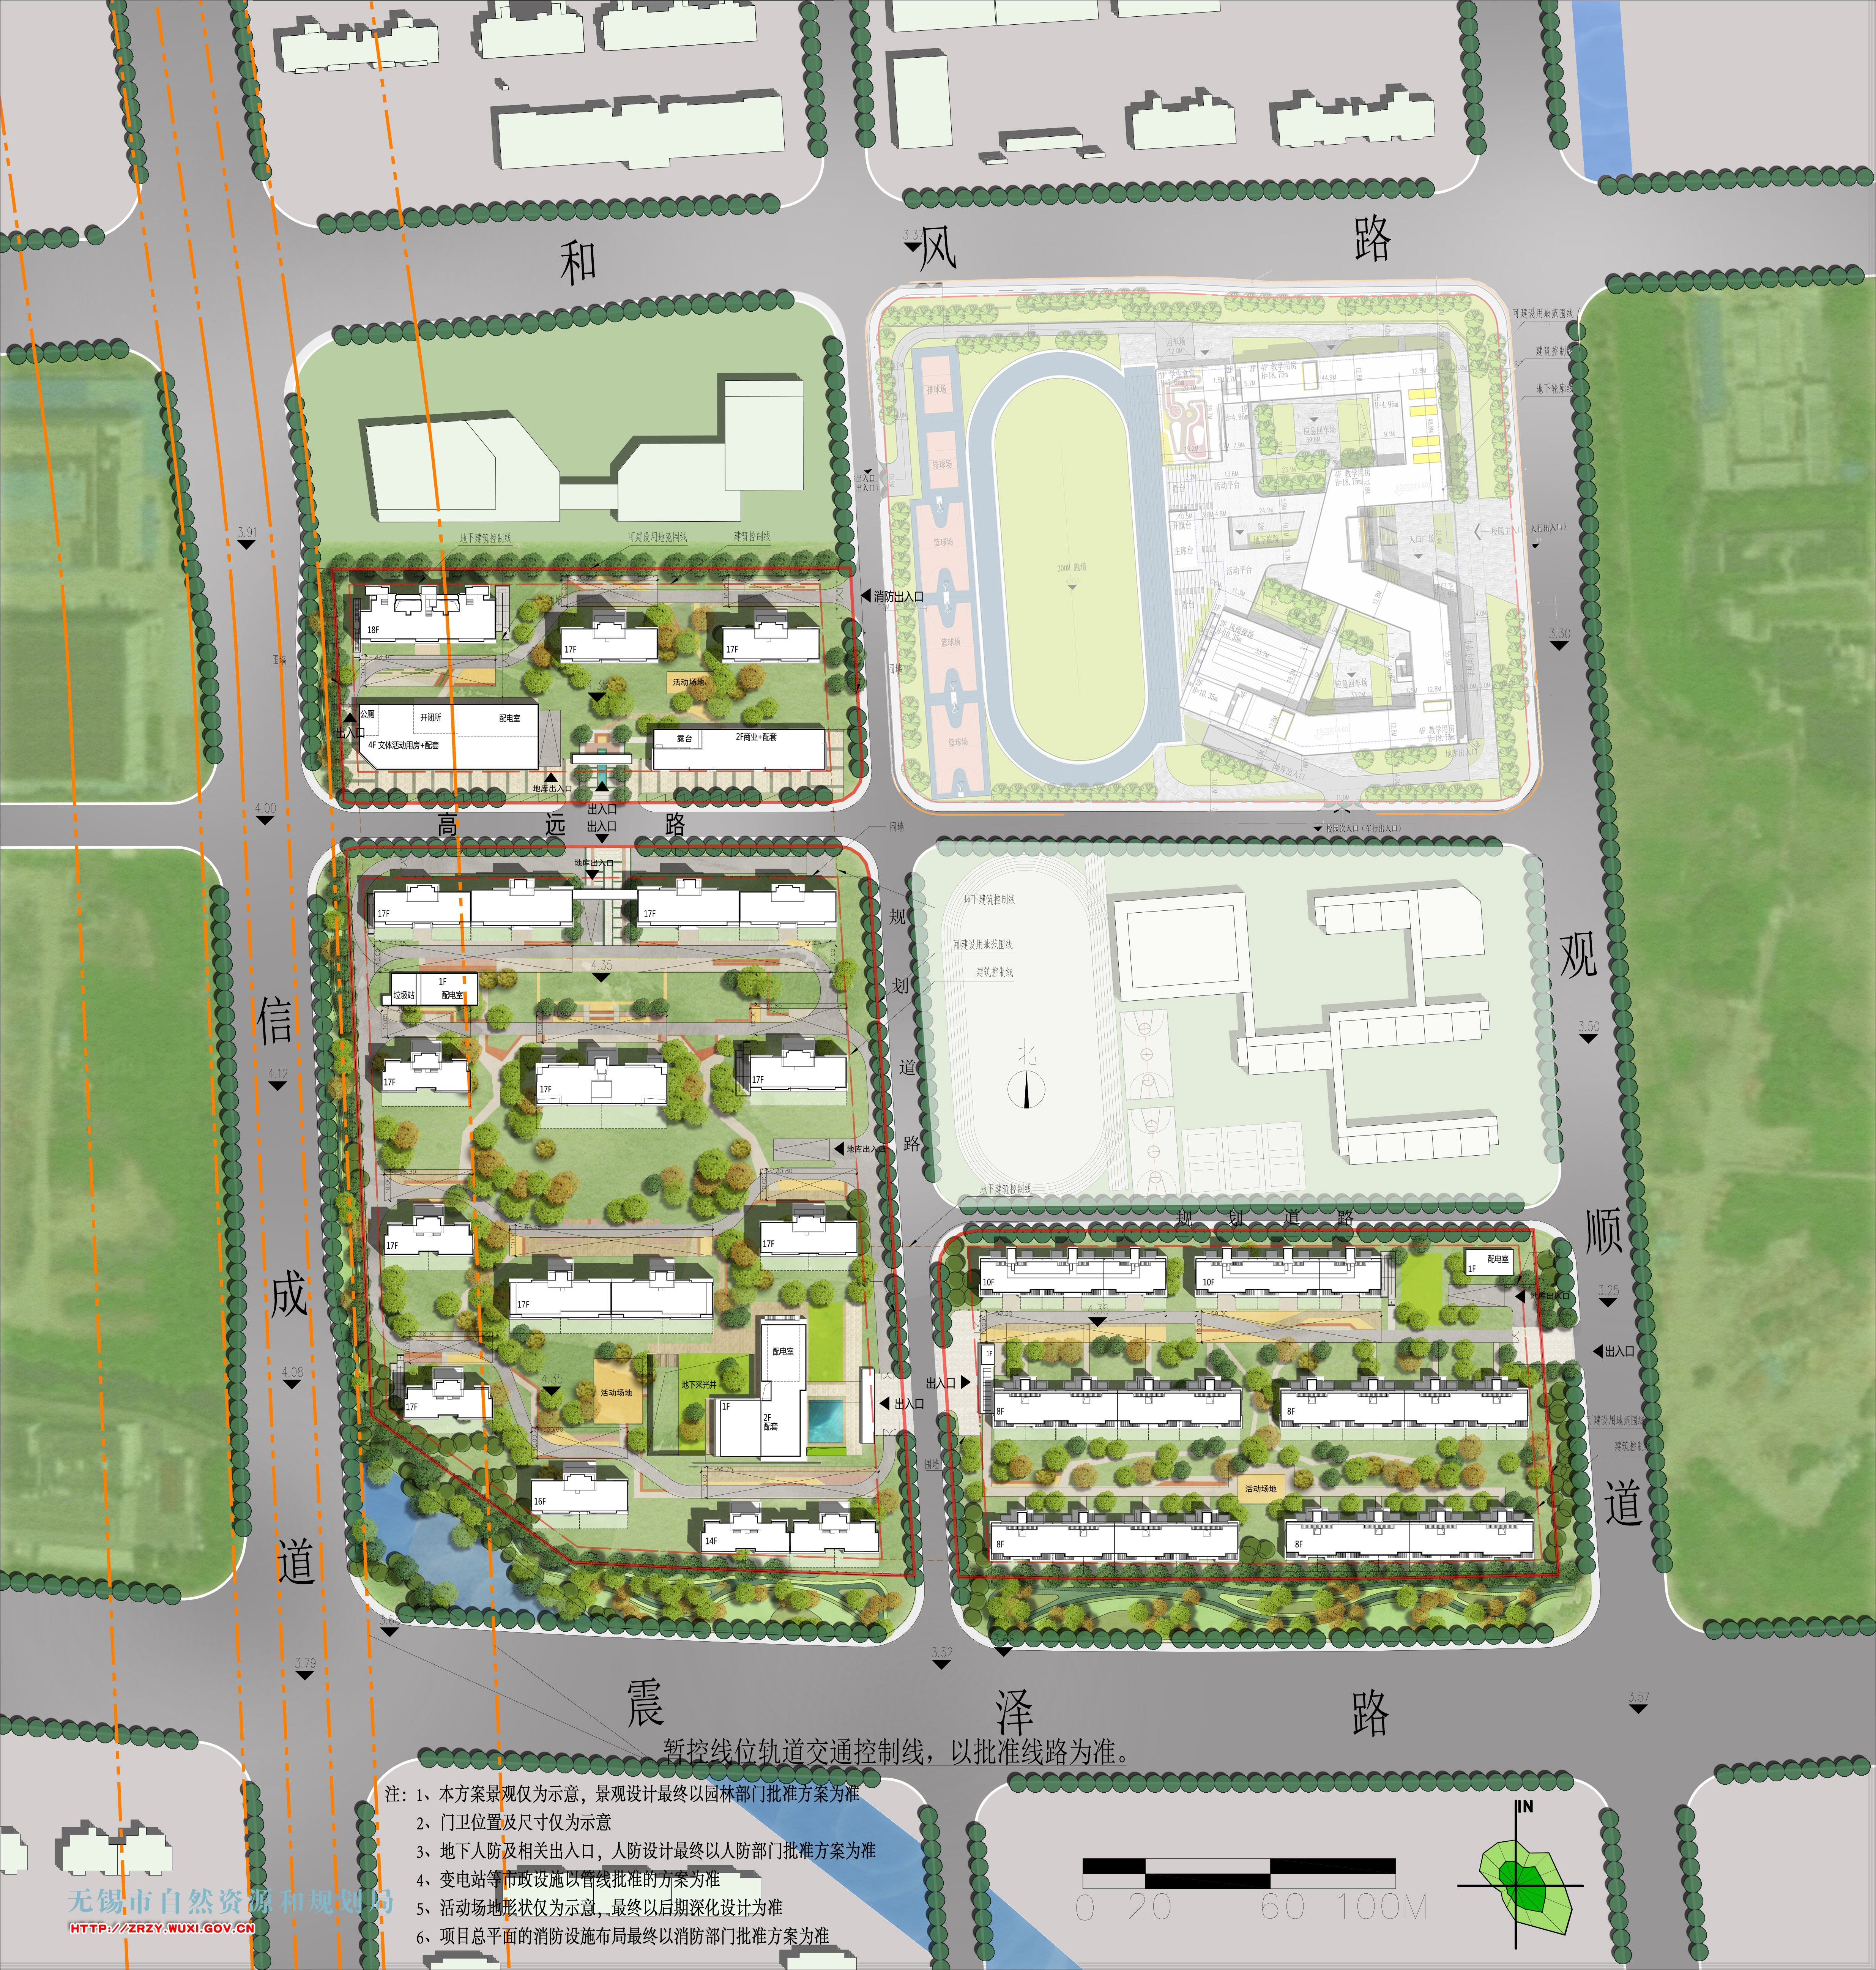 辉广和玺南地块（XDG-2021-24号地块）开发建设项目B区规划设计方案批前公示